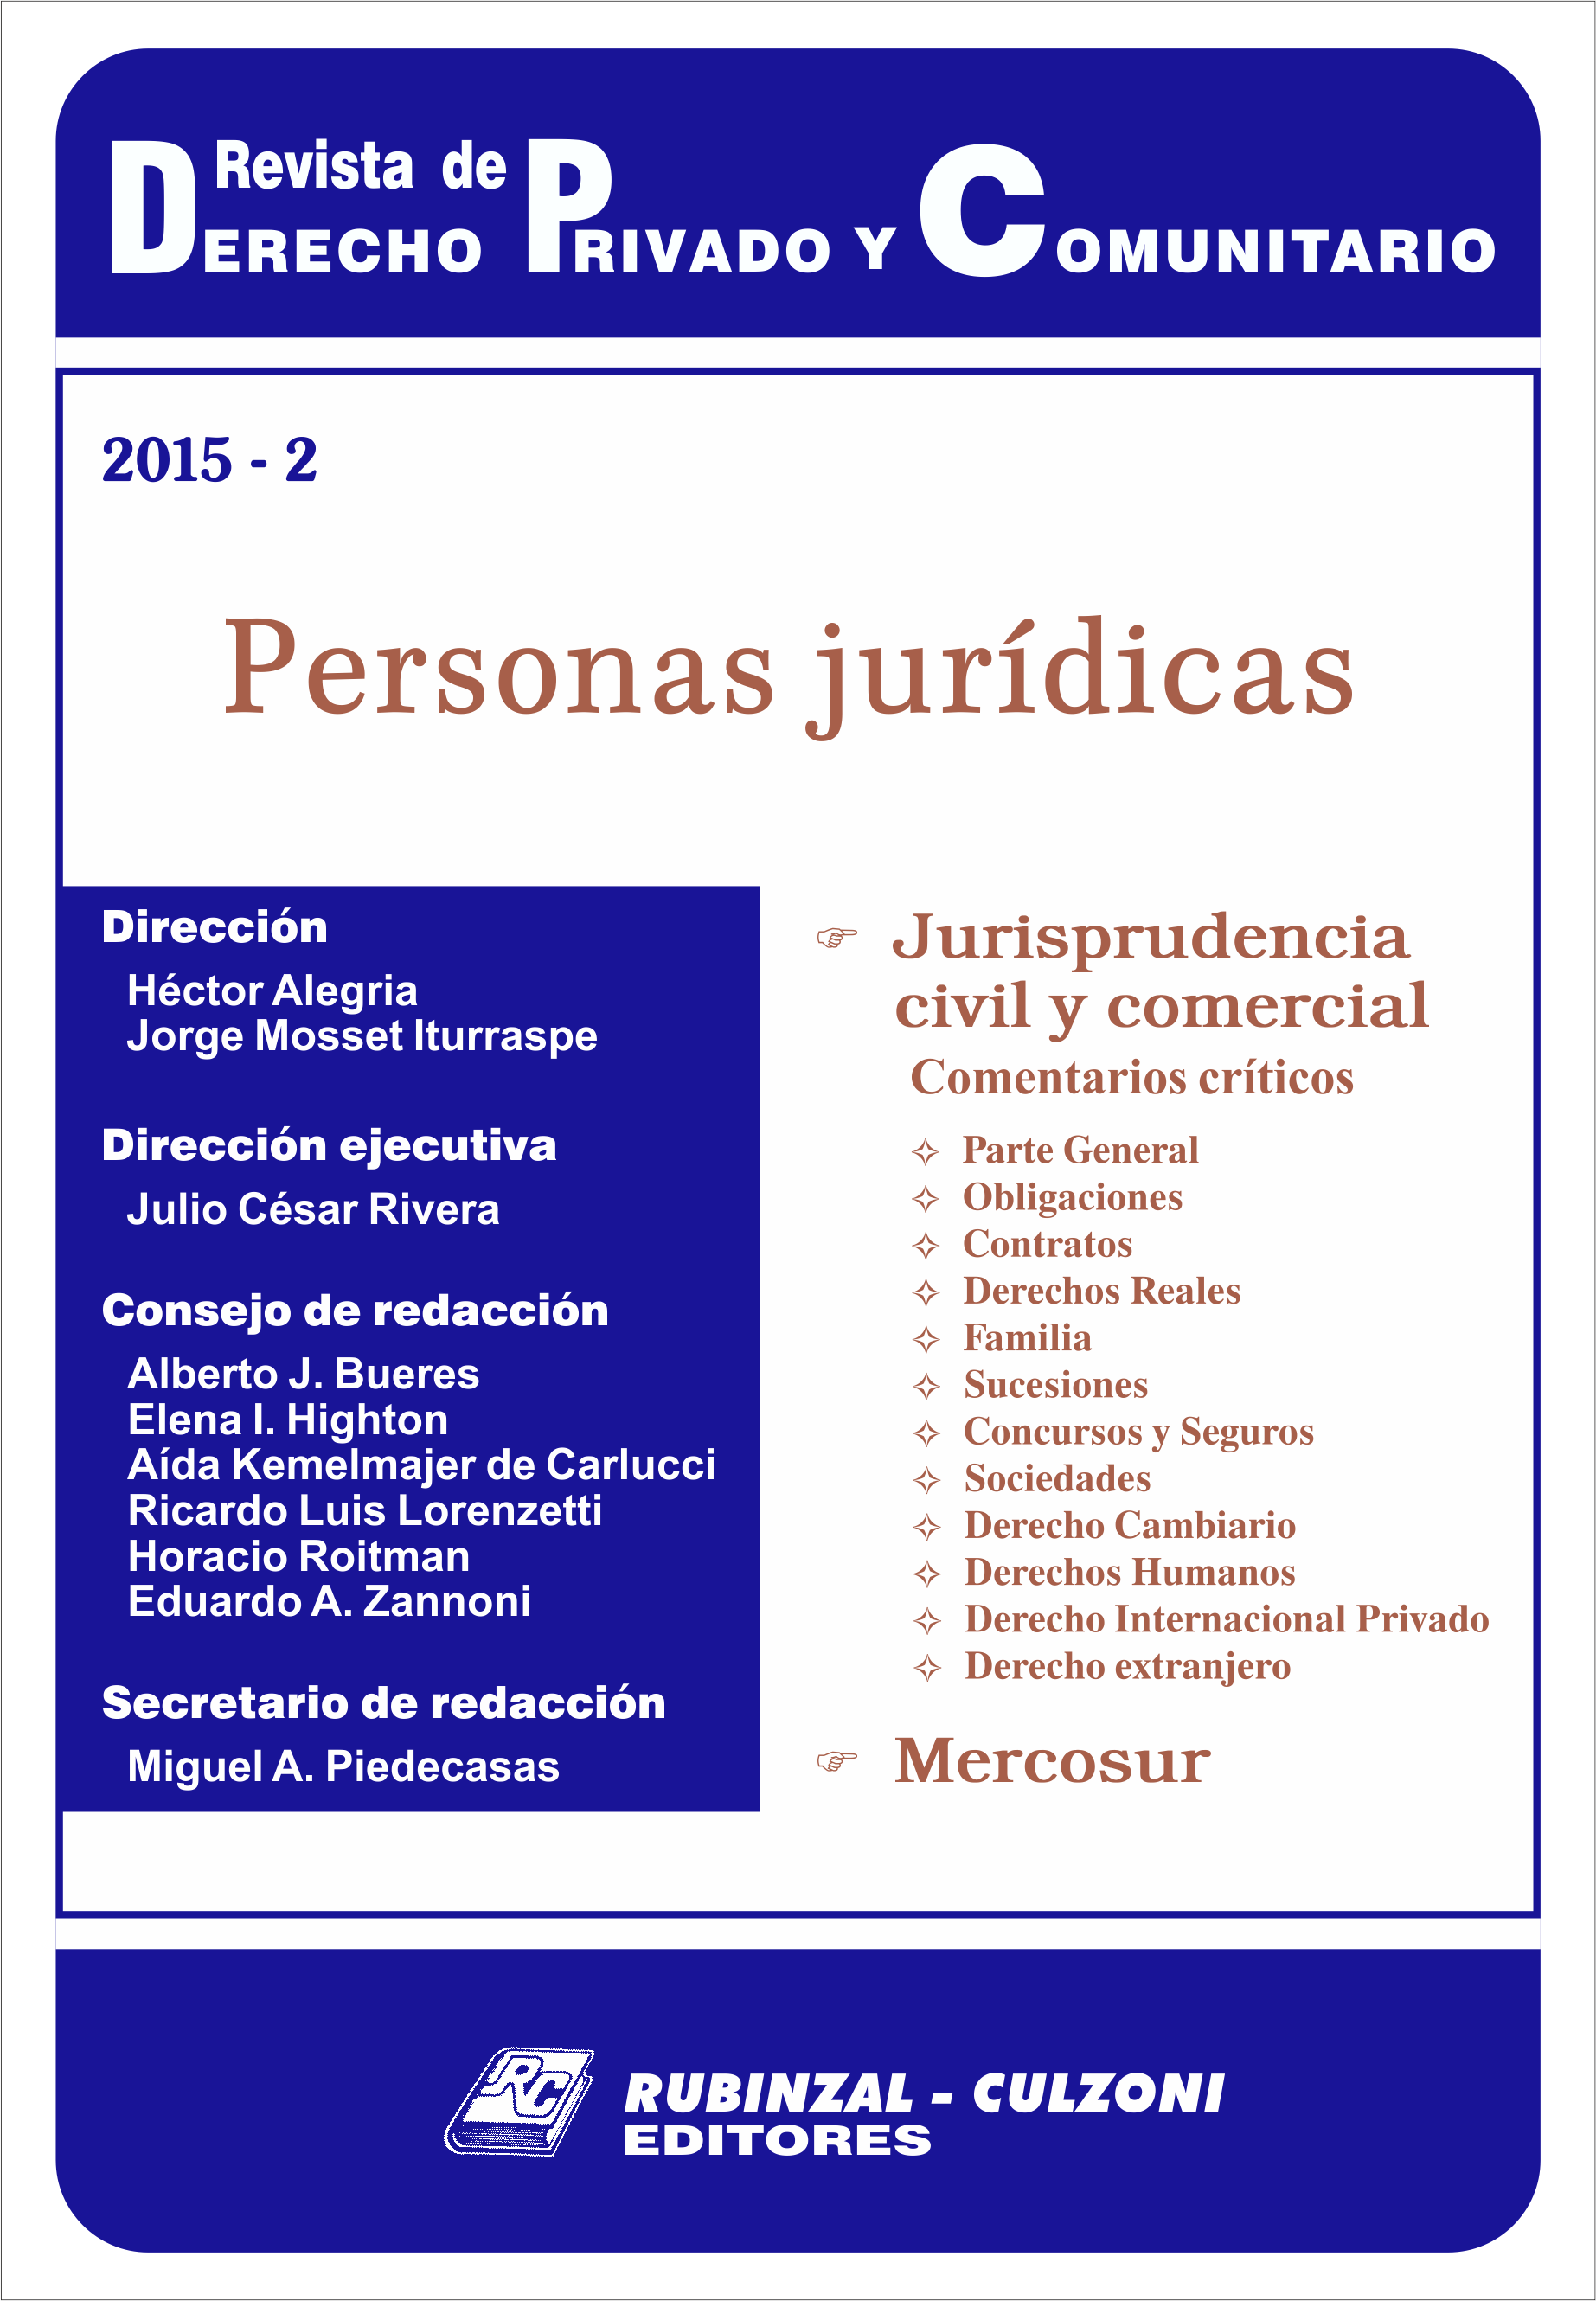 Revista de Derecho Privado y Comunitario - Personas Jurídicas.